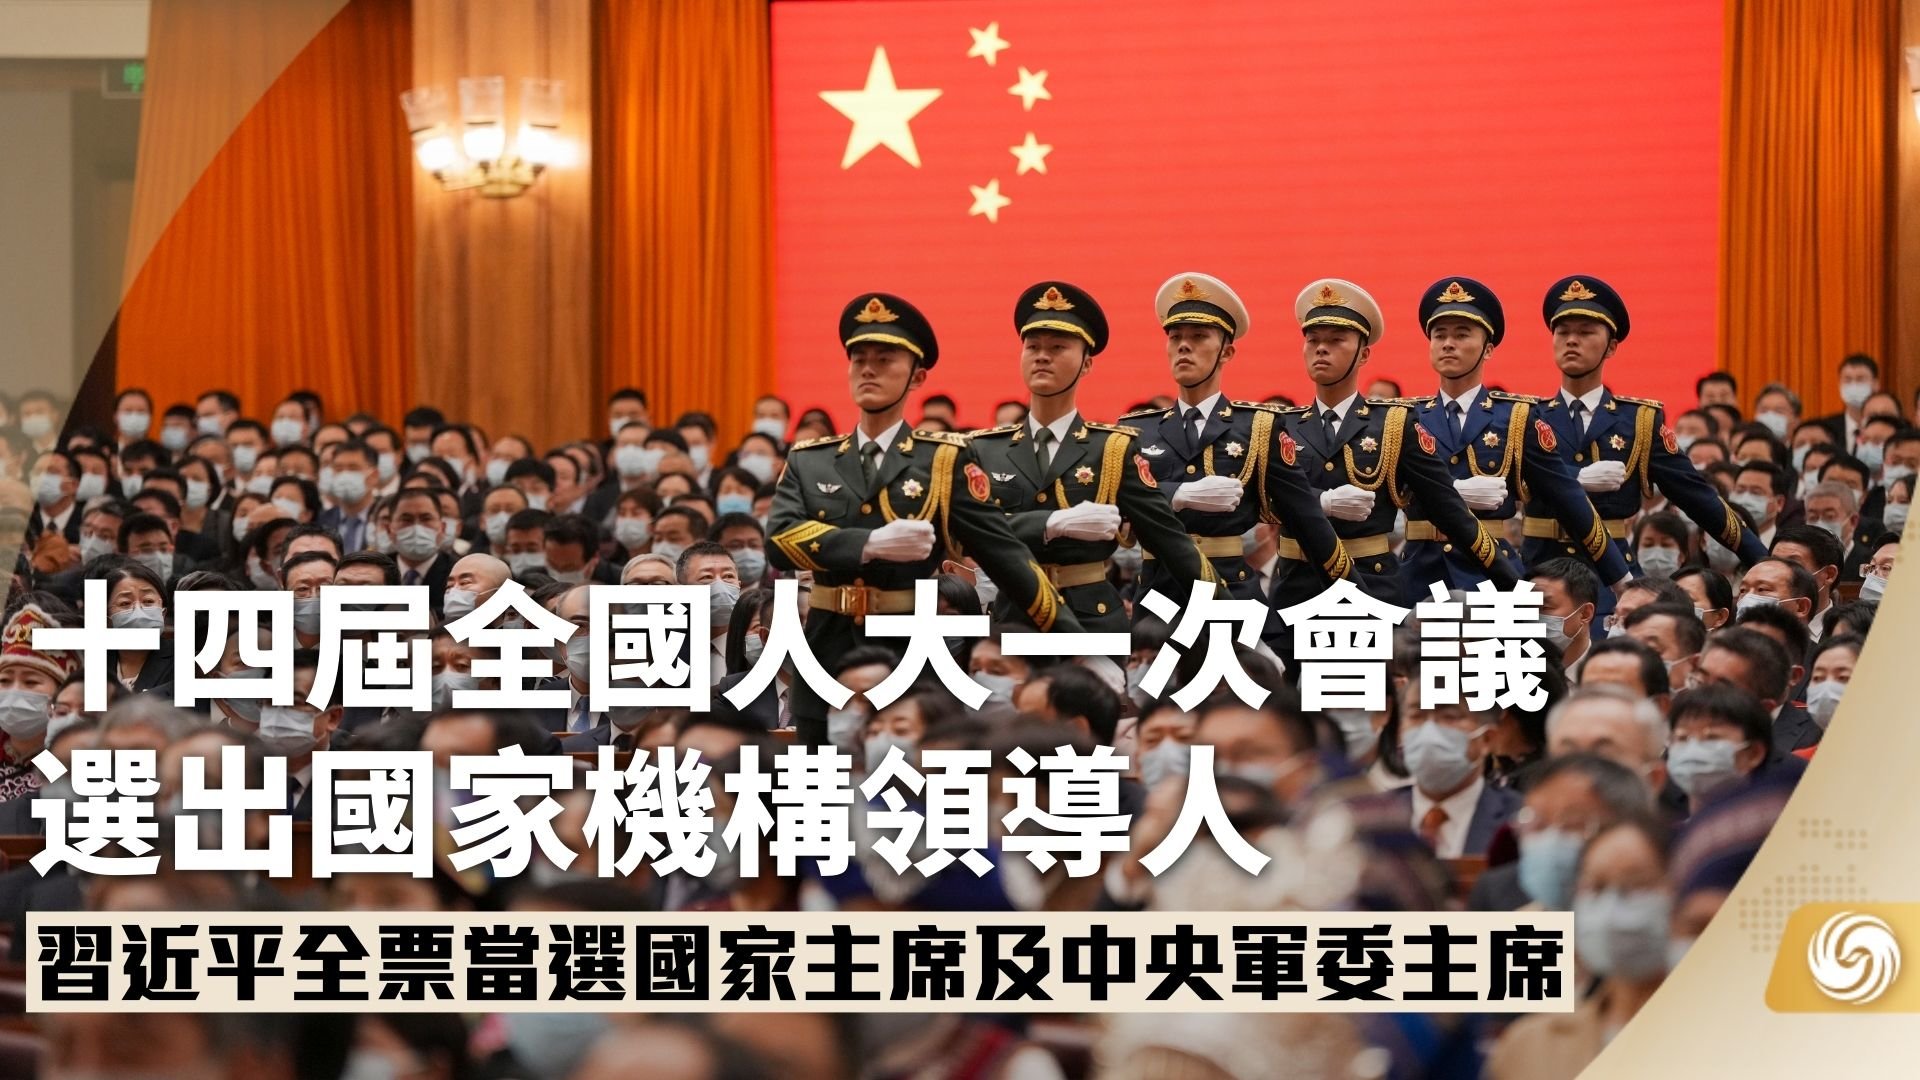 坚决拥护以习近平同志为核心的新一届中央领导集体-浙江工人日报网